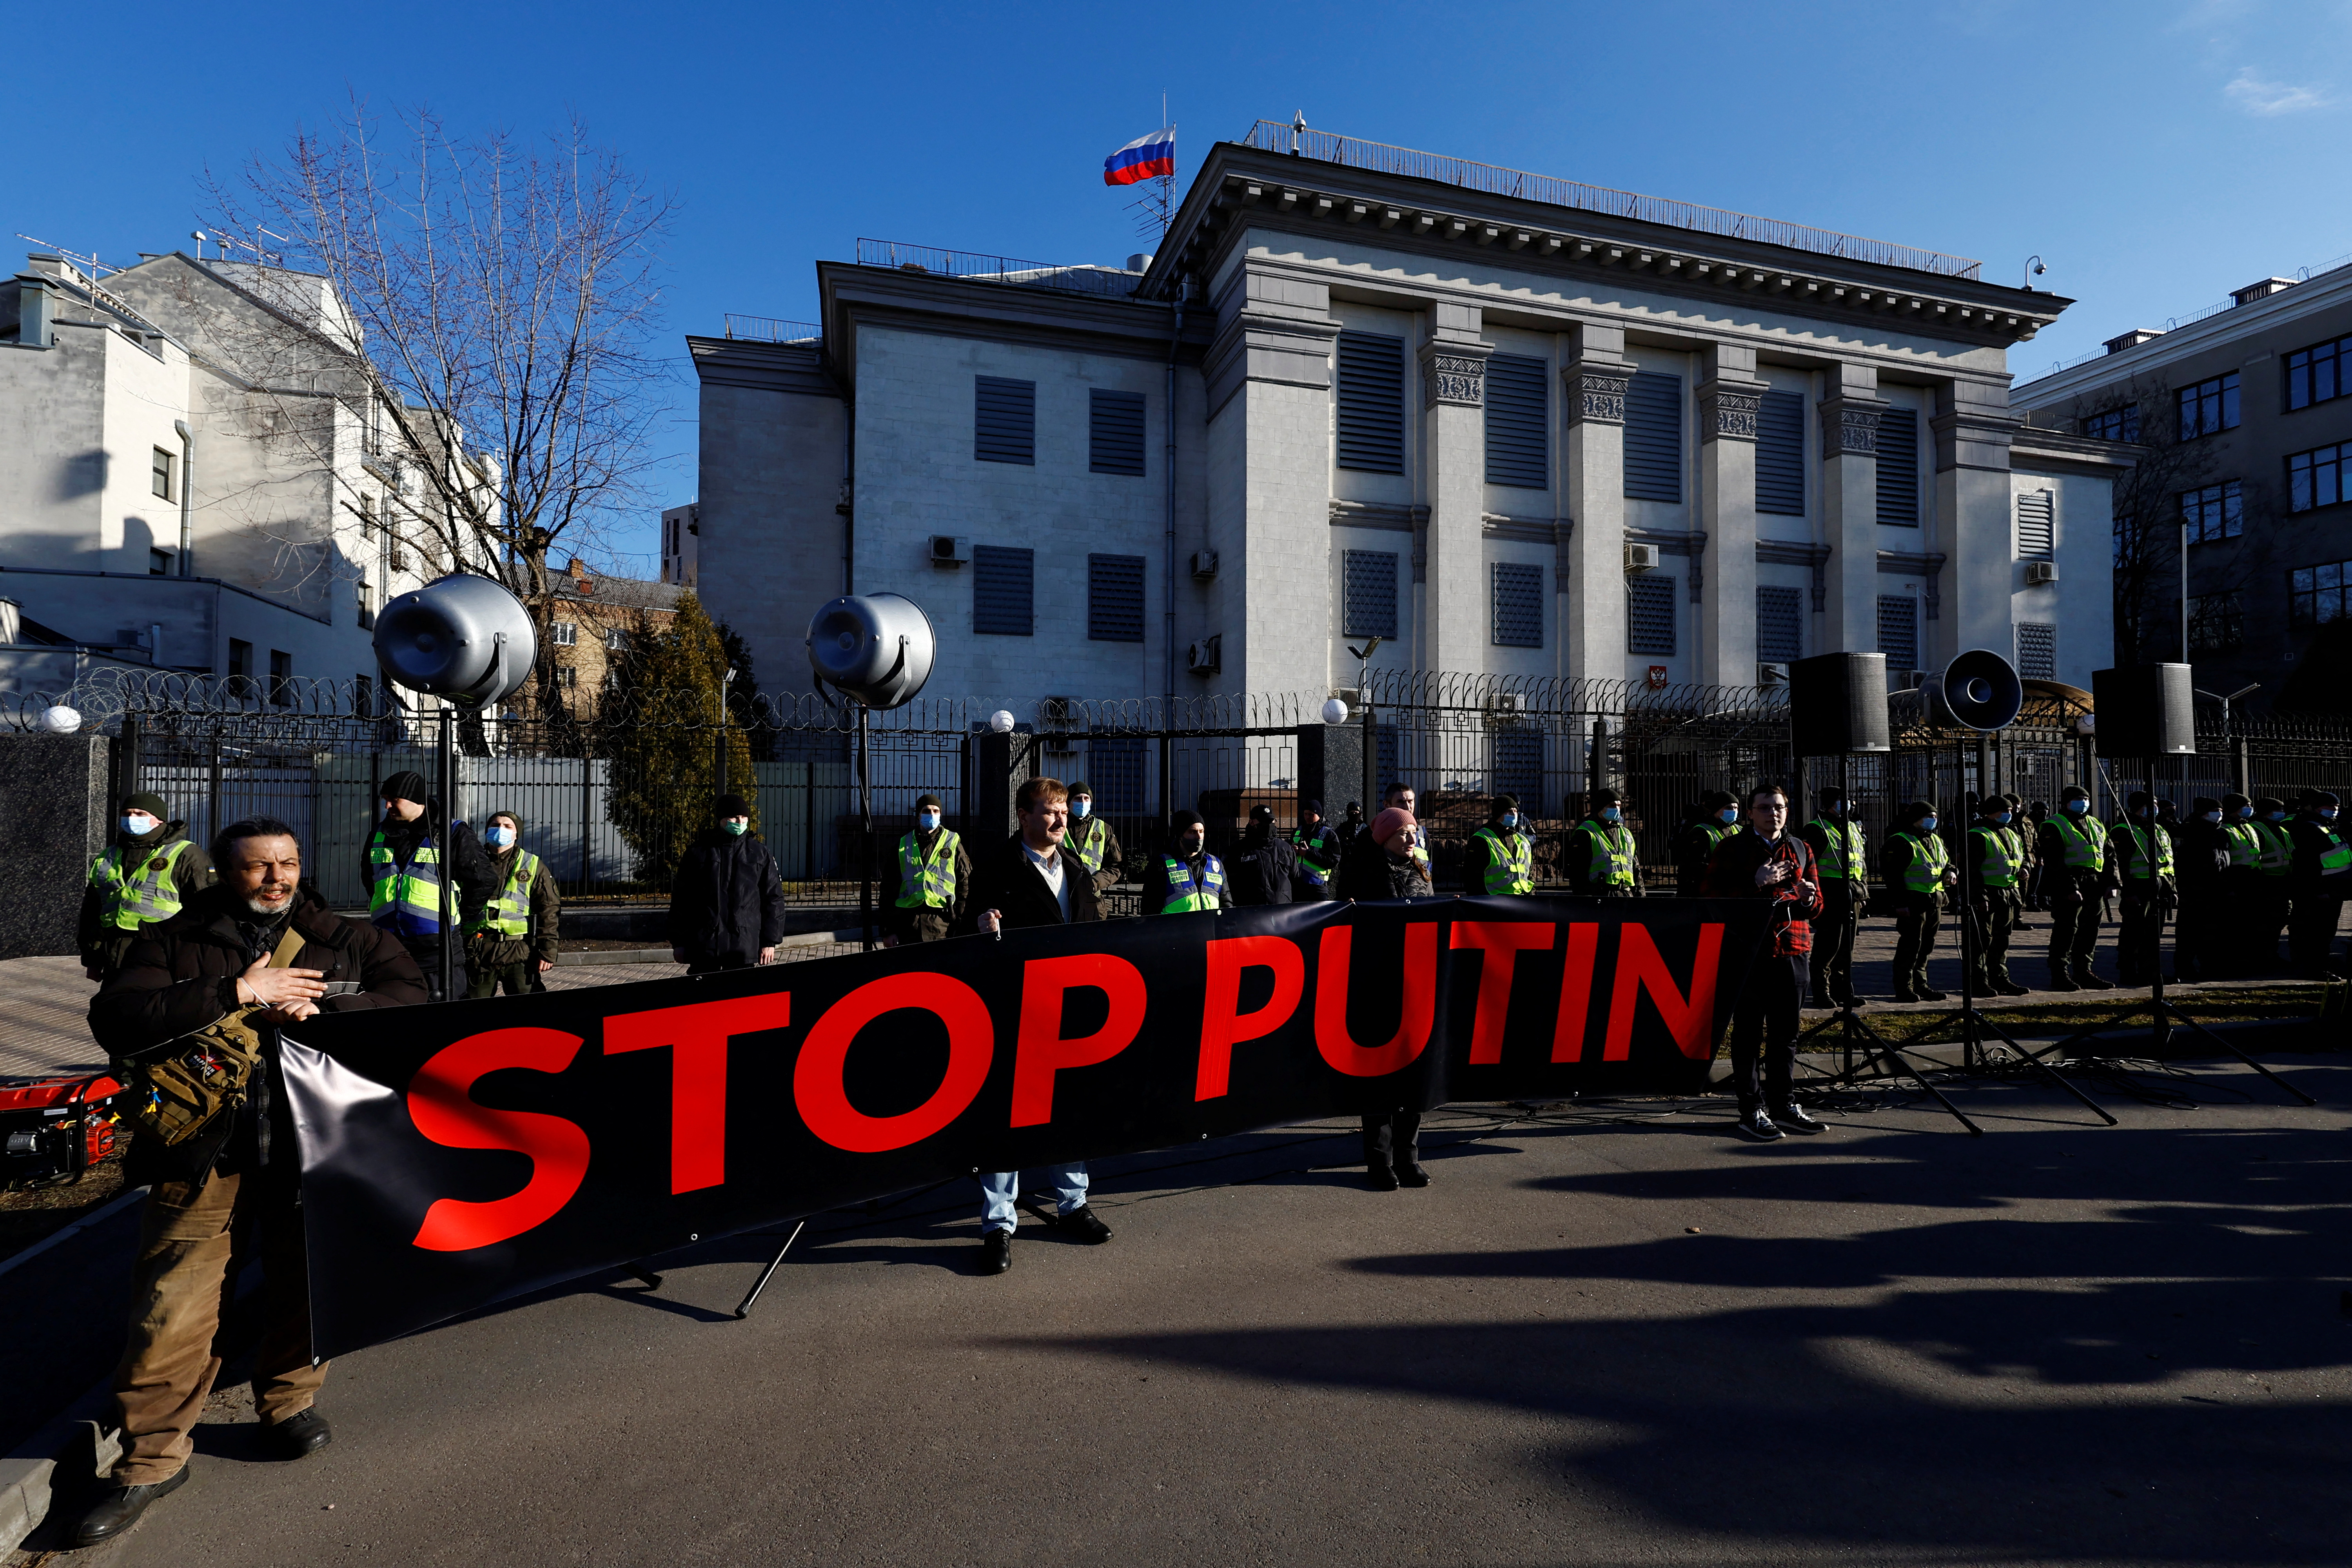 Ciudadanos ucranianos protestaron ante la embajada rusa en Kiev, en rechazo a la invasión a su país